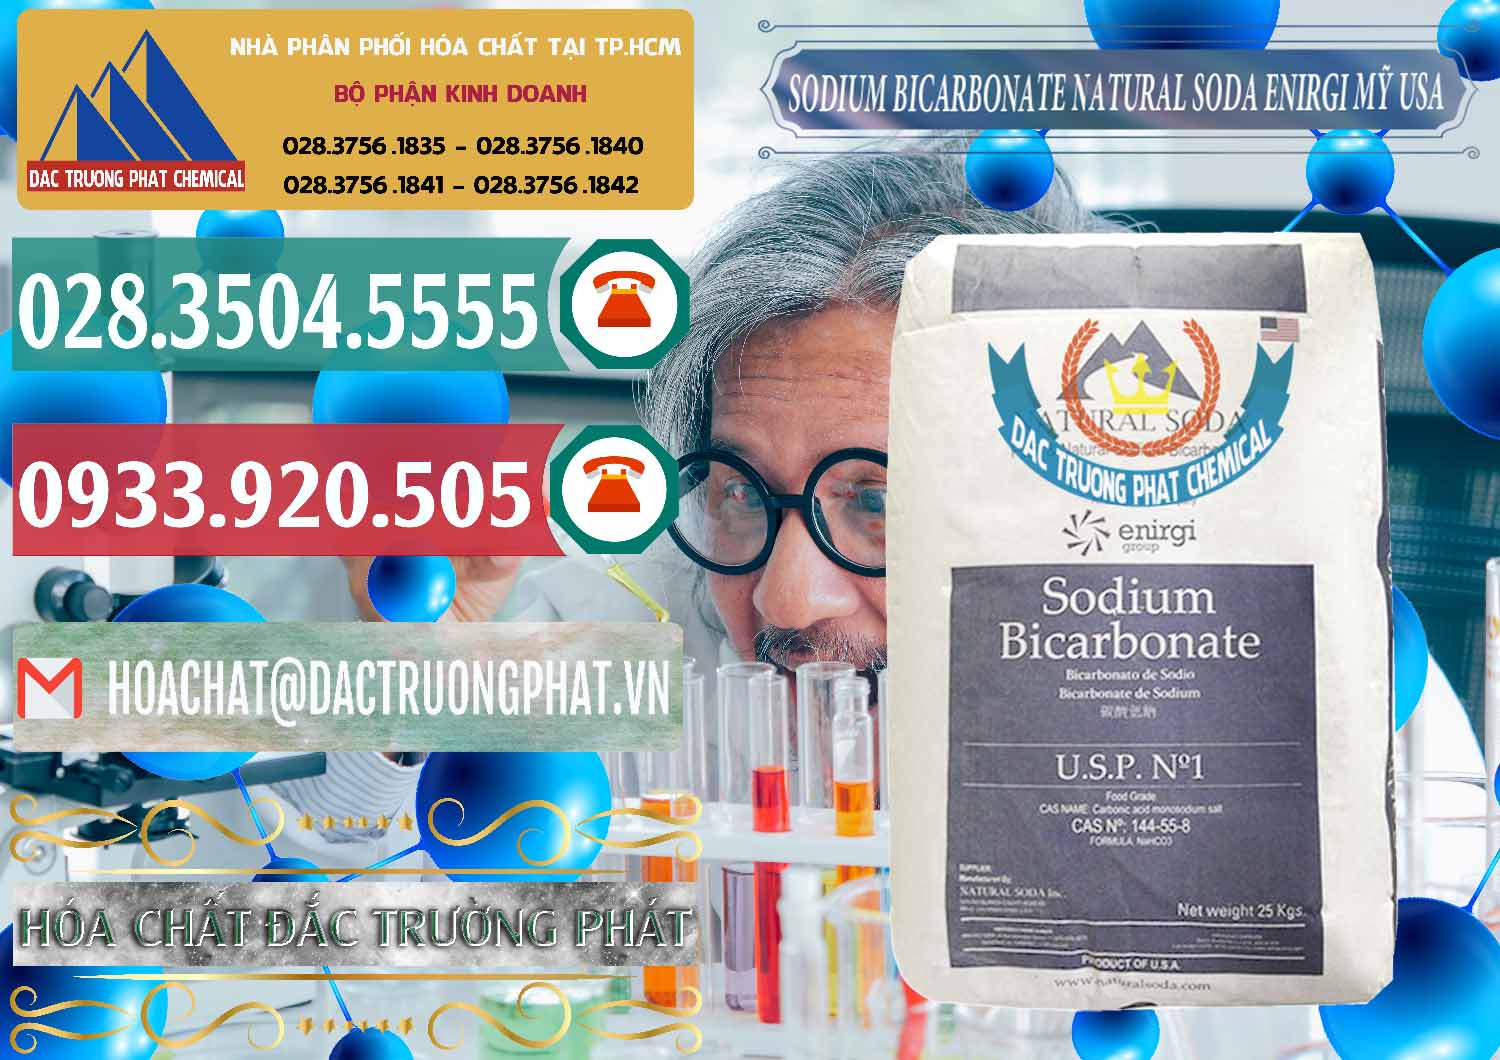 Công ty bán và phân phối Sodium Bicarbonate – Bicar NaHCO3 Food Grade Natural Soda Enirgi Mỹ USA - 0257 - Cty chuyên phân phối & cung ứng hóa chất tại TP.HCM - muabanhoachat.vn